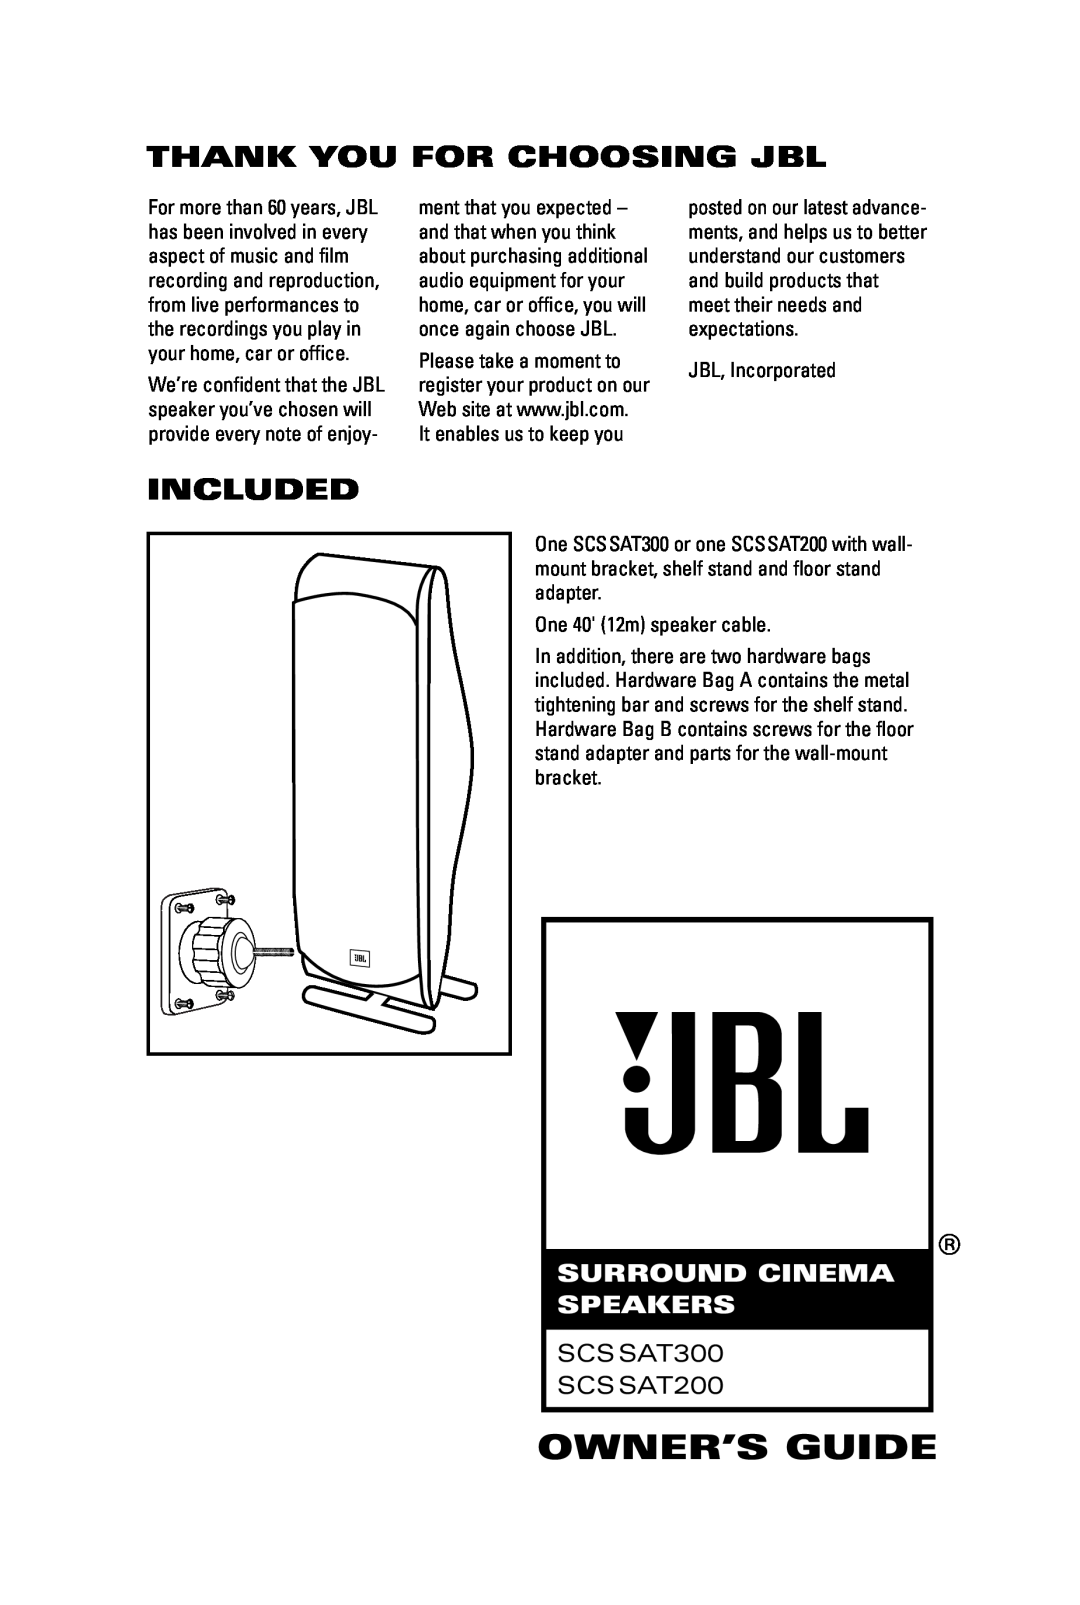 JBL manual Thank You For Choosing Jbl, Included, Owner’S Guide, Surround Cinema Speakers, SCSSAT300 SCSSAT200 